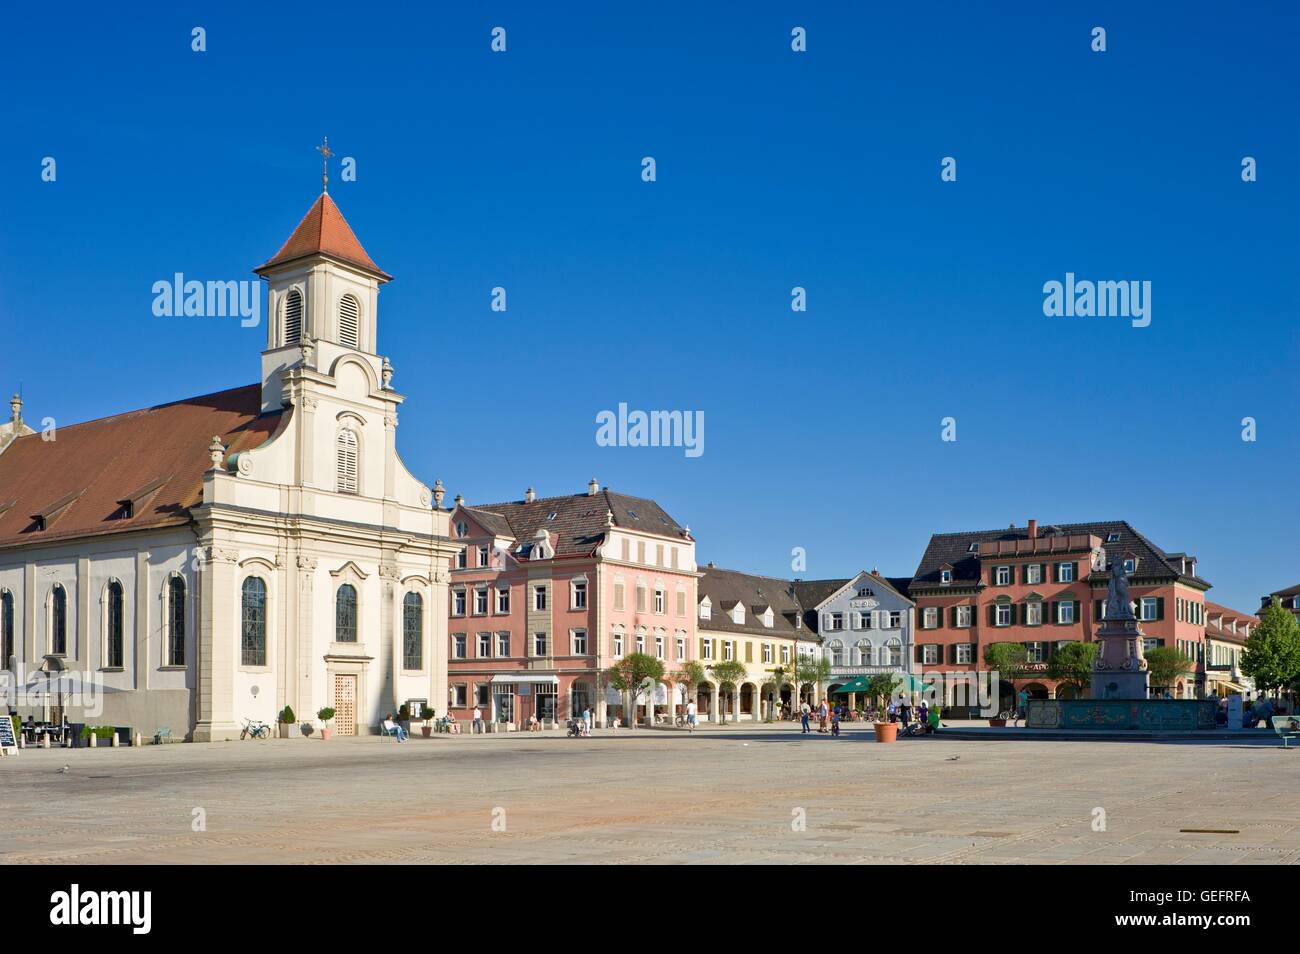 Marketplace with Catholic parish church, Ludwigsburg Stock Photo